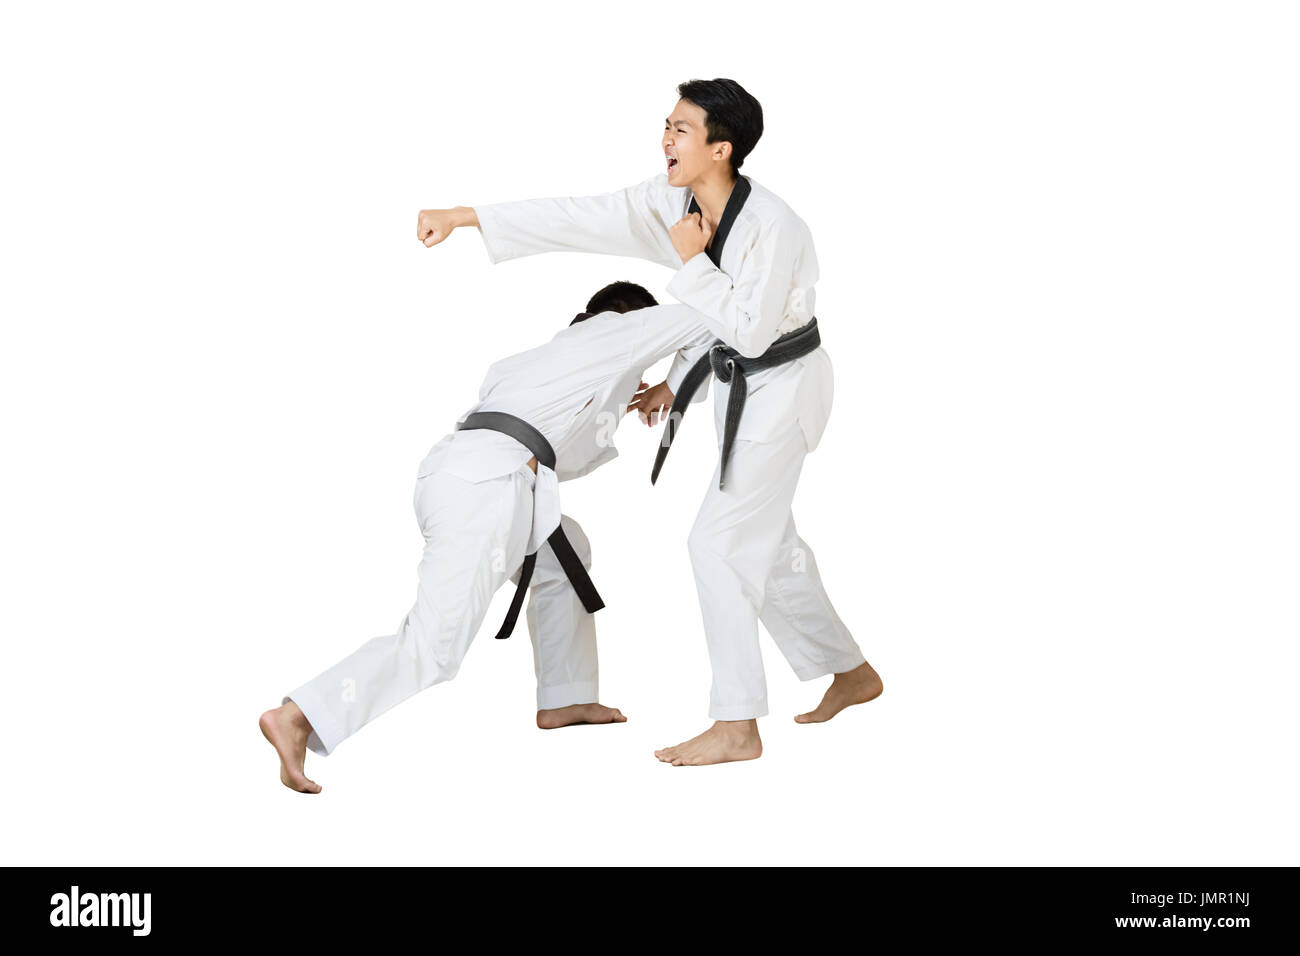 Porträt von zwei asiatischen Taekwondo professionell mit schwarzen Gürtel  kämpfen. Isolierte voller Länge auf weißem Hintergrund mit textfreiraum und  Clipping-Pfad Stockfotografie - Alamy